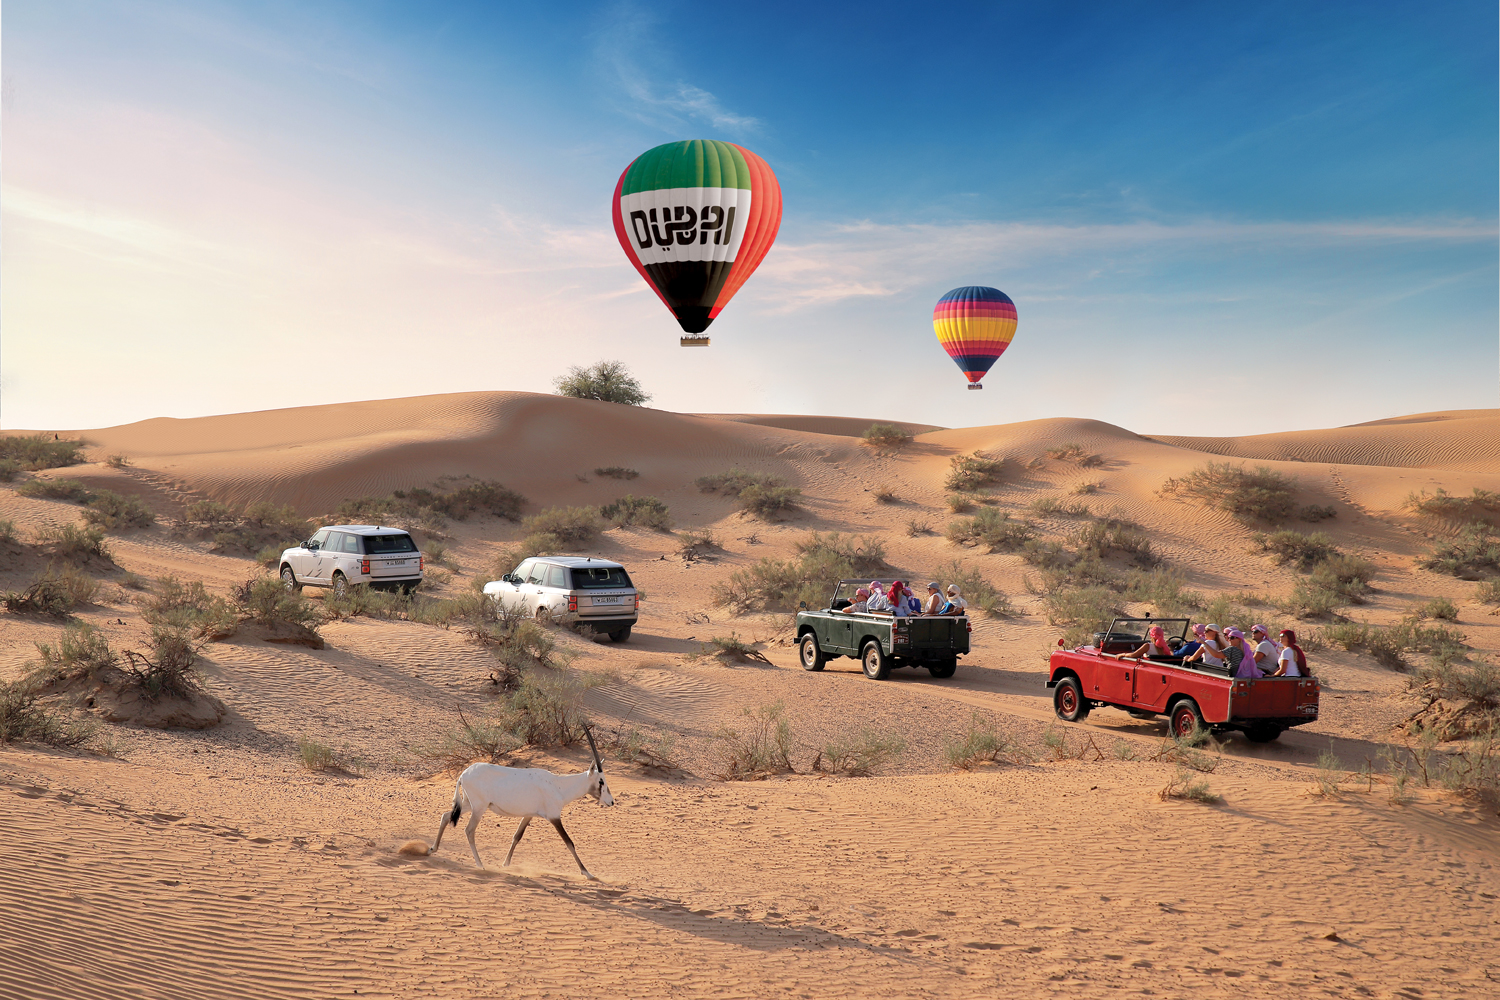 Experience an award-winning hot air balloon ride in Dubai | Time Out Dubai